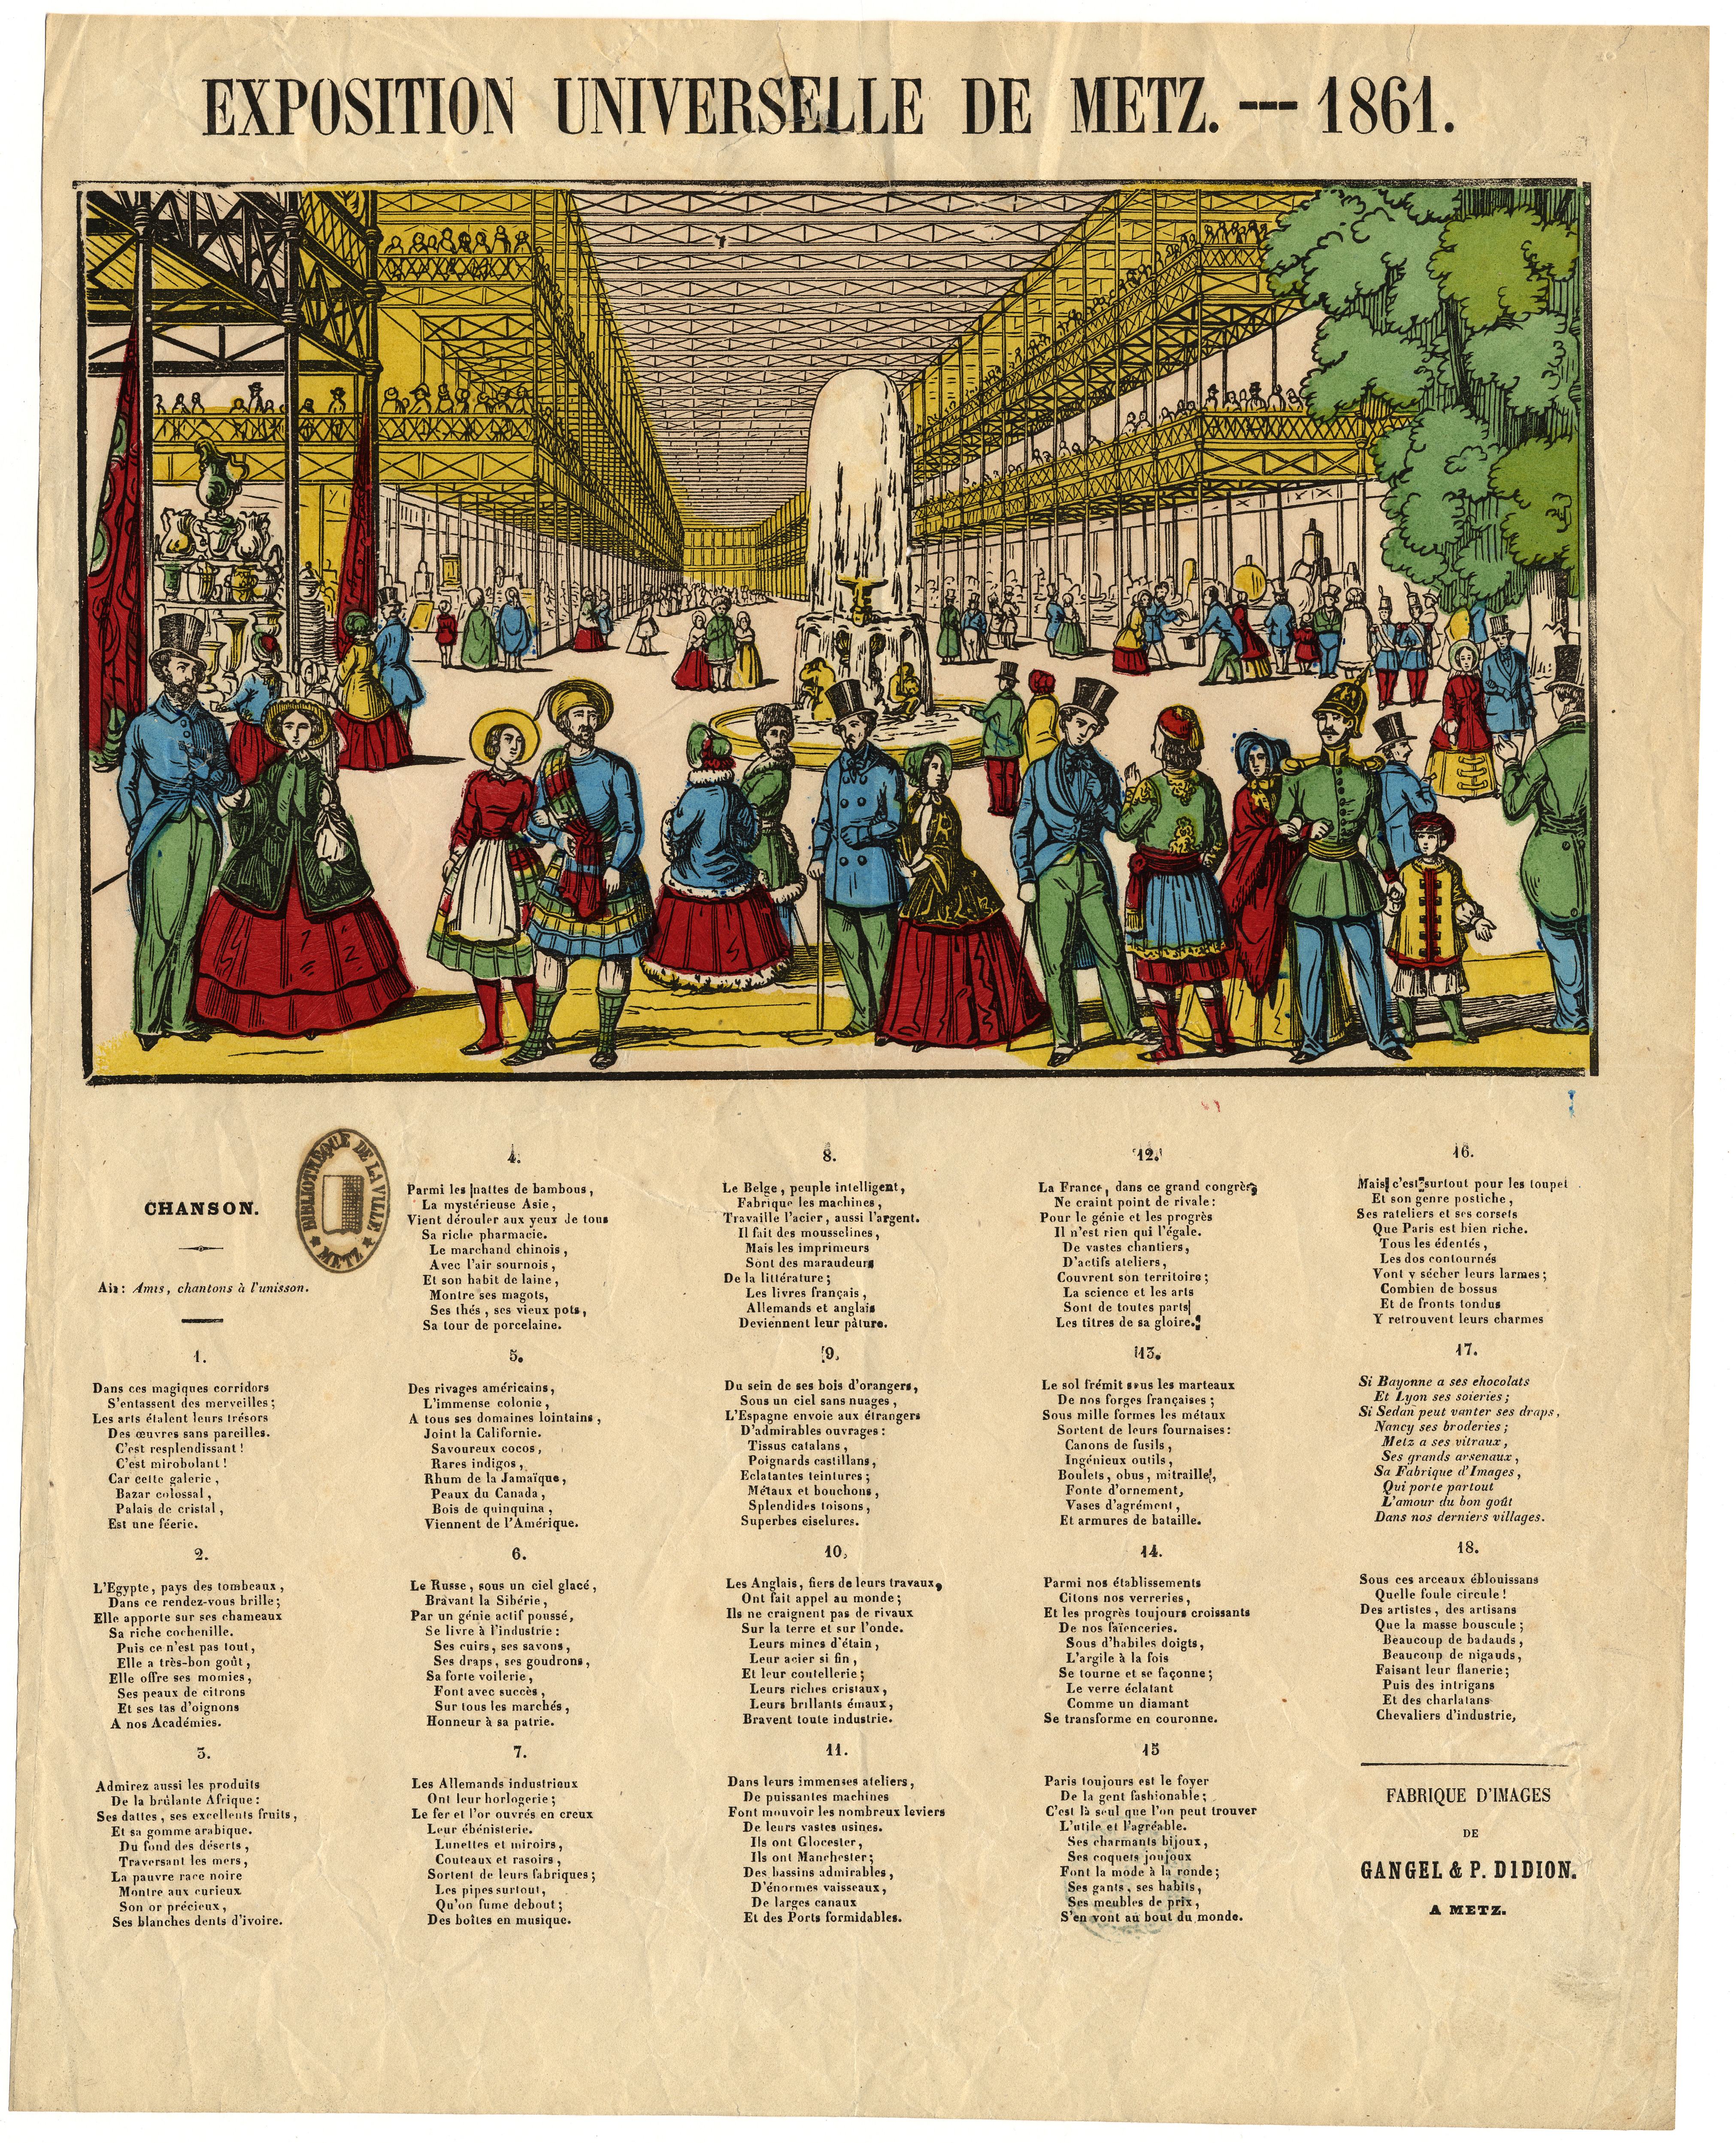 Contenu du Exposition universelle de Metz 1861